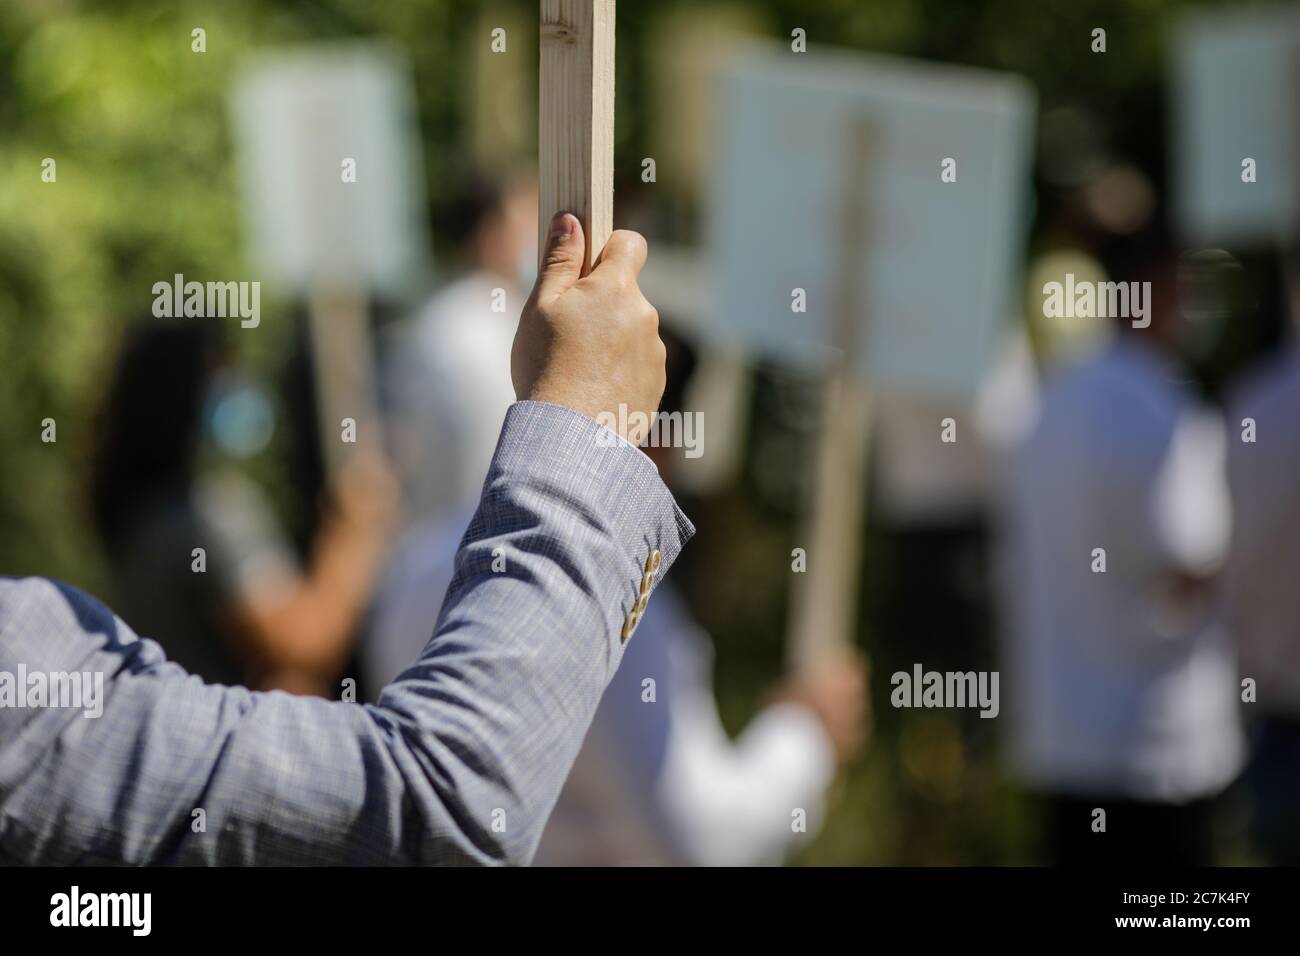 Geringe Schärfentiefe (selektiver Fokus) Bild mit der Hand eines Mannes, der während einer politischen Kundgebung ein Holzplakat hält. Stockfoto